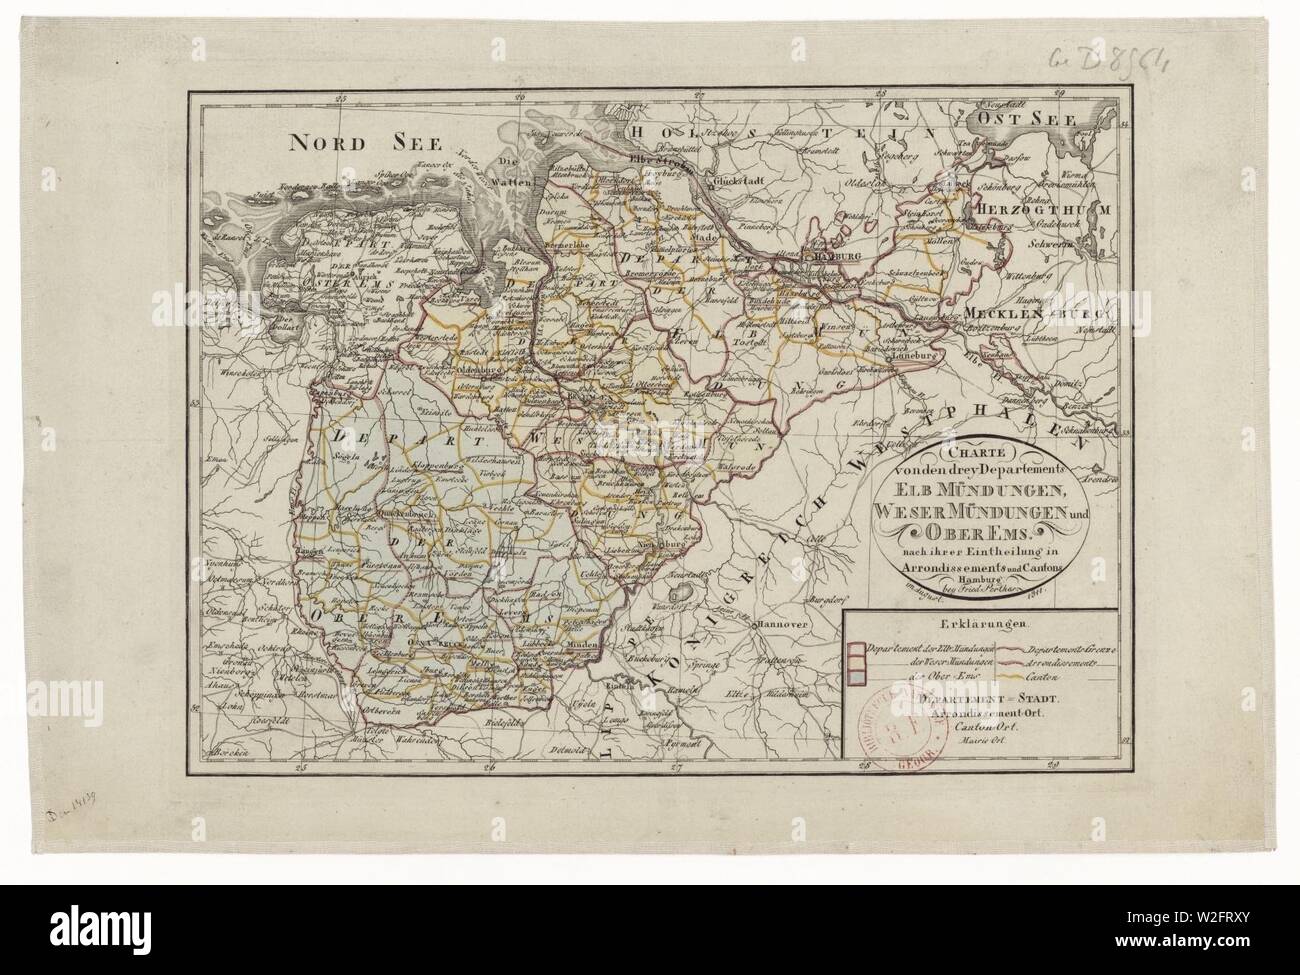 Charte von den drey departements - Elb Mündungen, Weser Mündtengen und Ober Ems - 1811 - btv1b84589357. Stock Photo